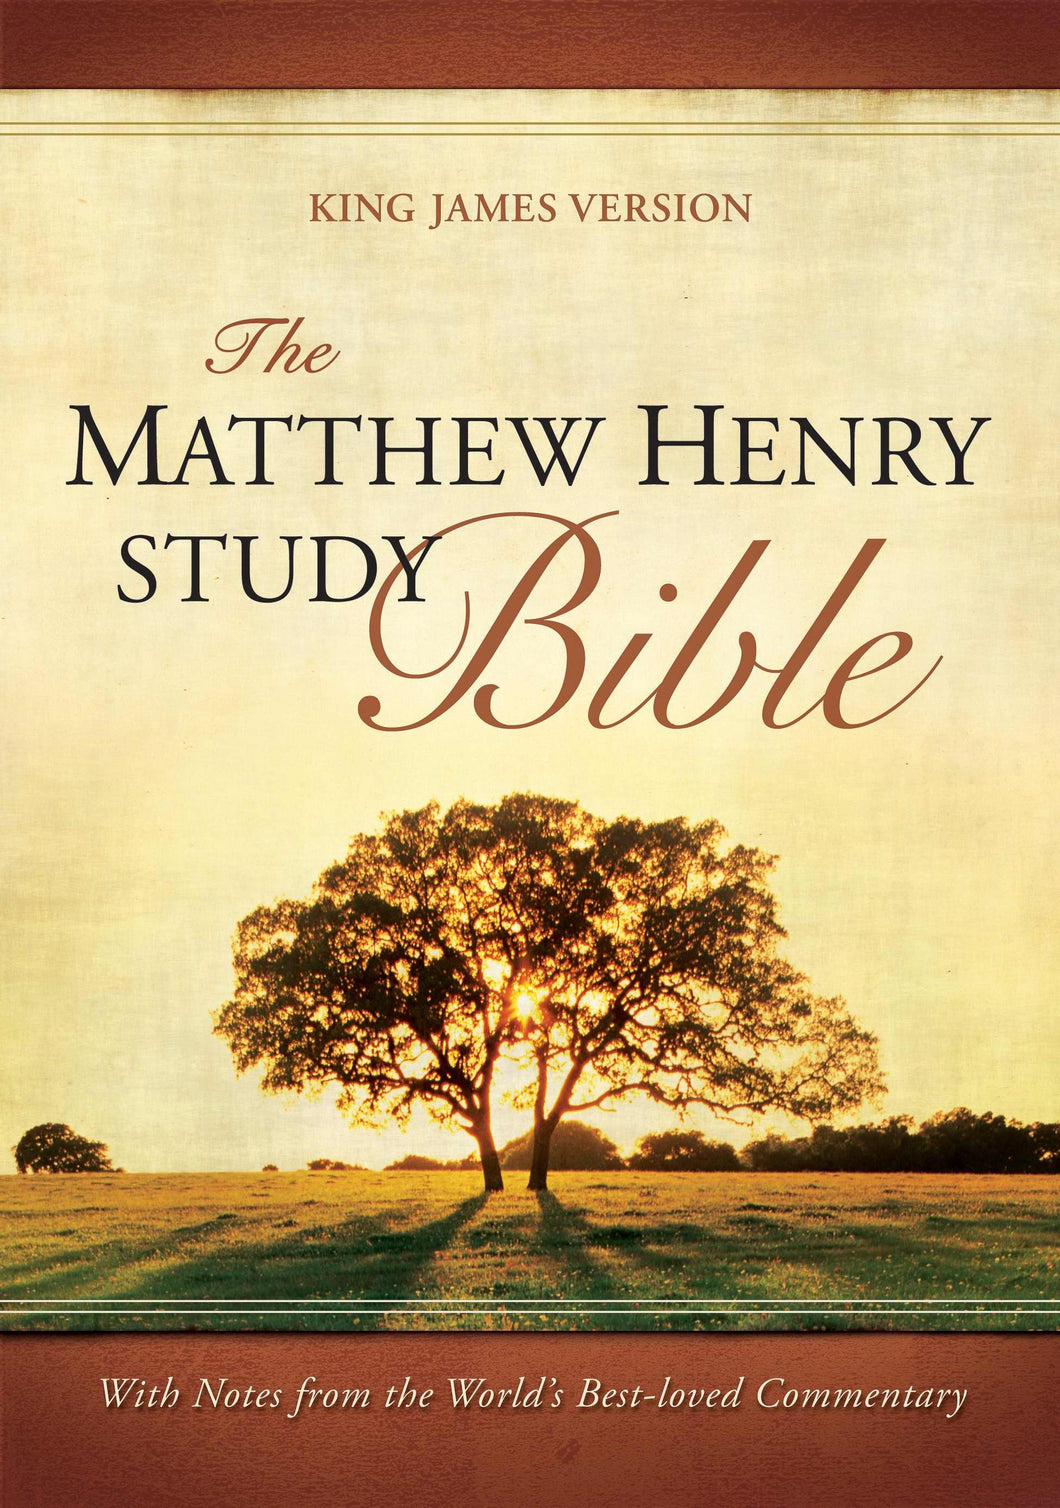 KJV Matthew Henry Study Bible-Hardcover